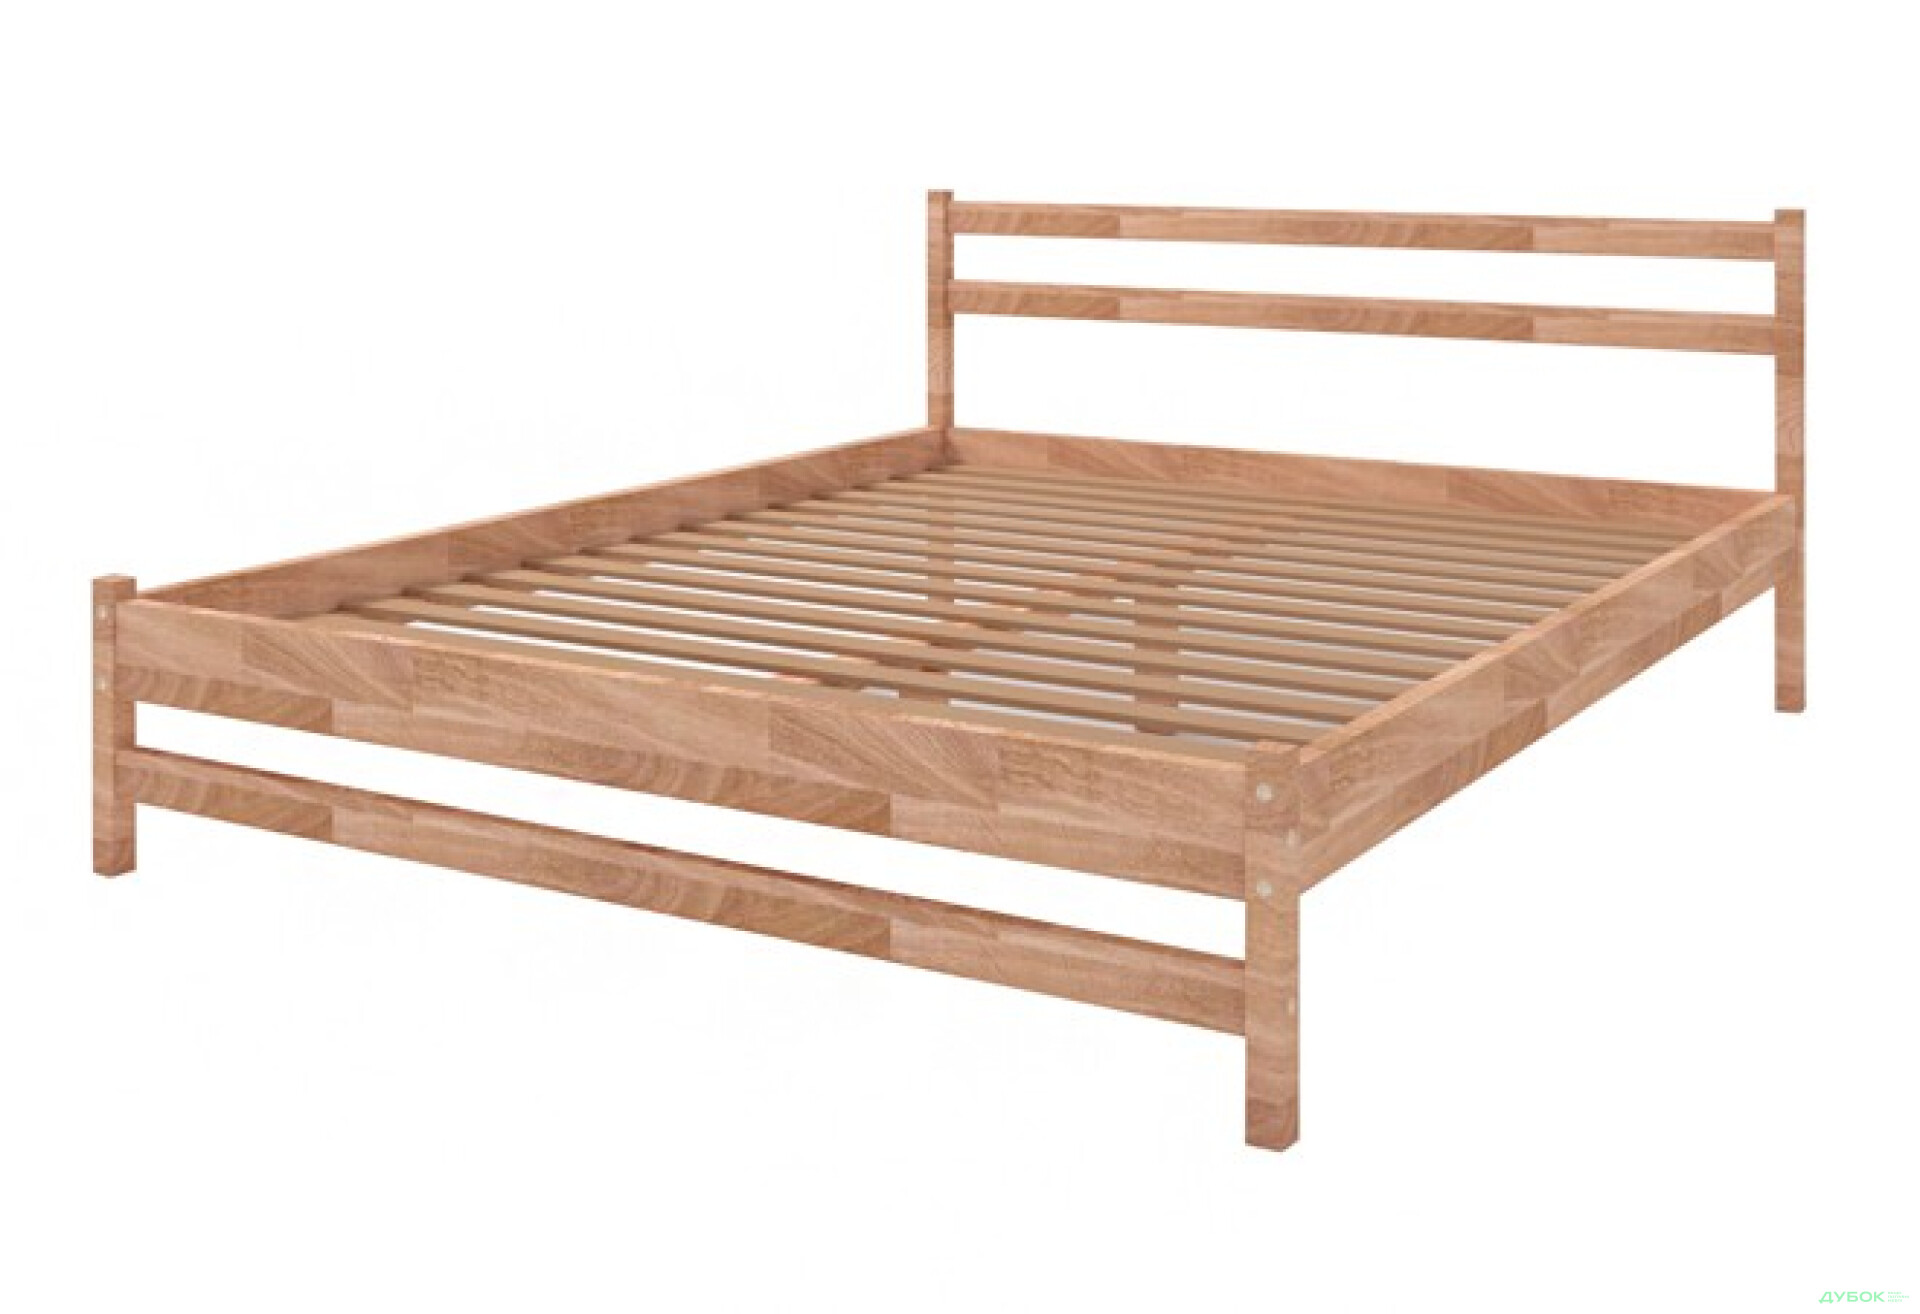 Фото 2 - Кровать деревянная Анжела 160х200 с вкладом Креденс Фениче